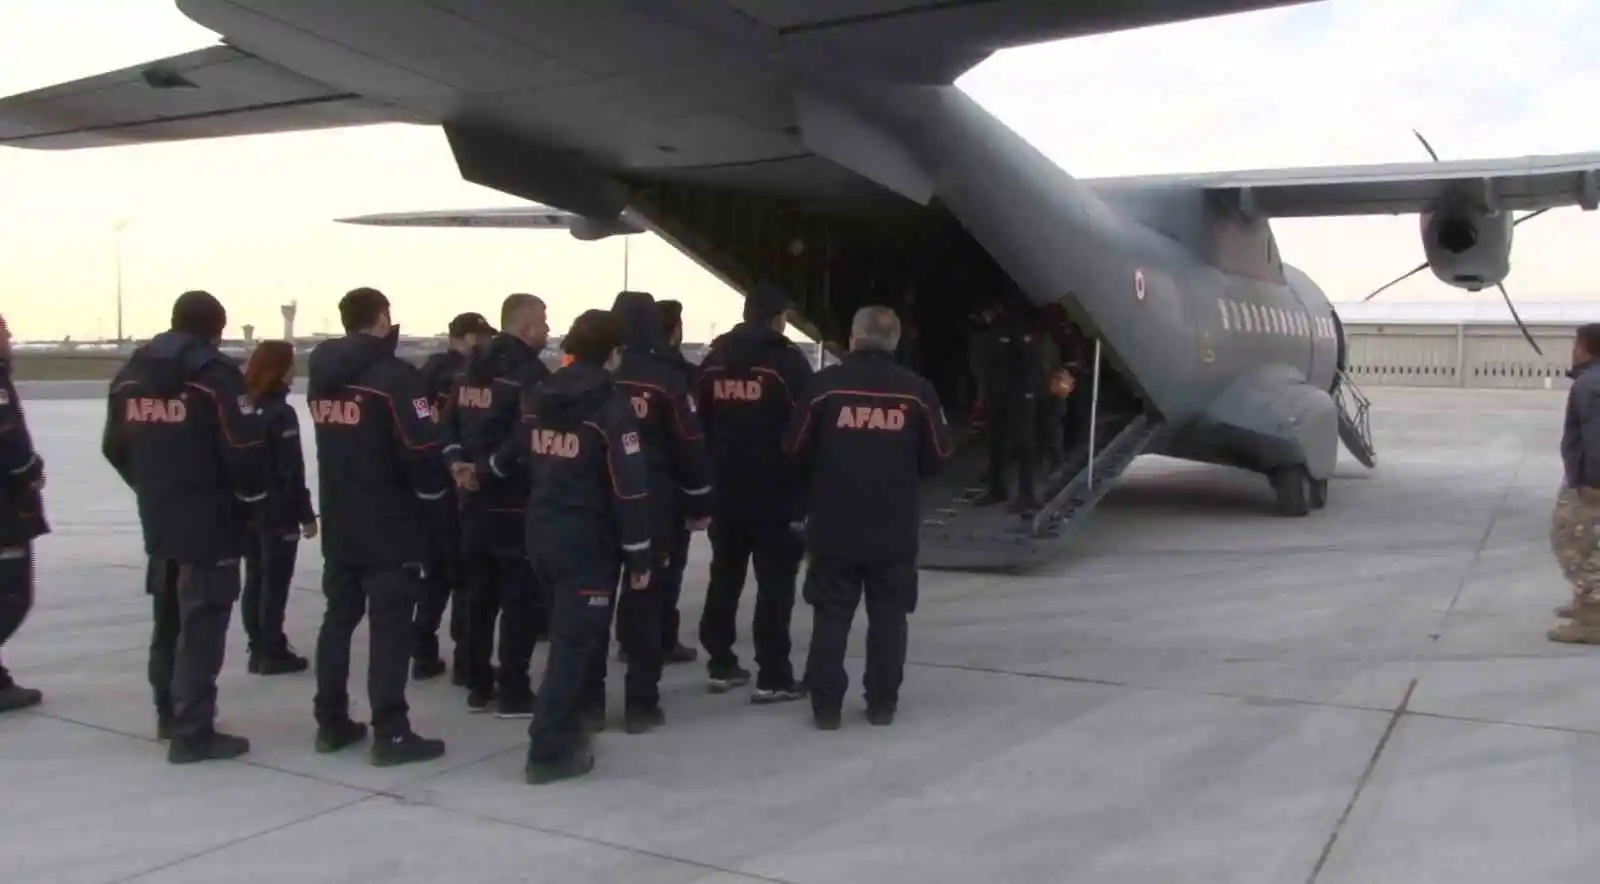 Hatay'da görev yapan 56 AFAD personeli İstanbul'a geldi
